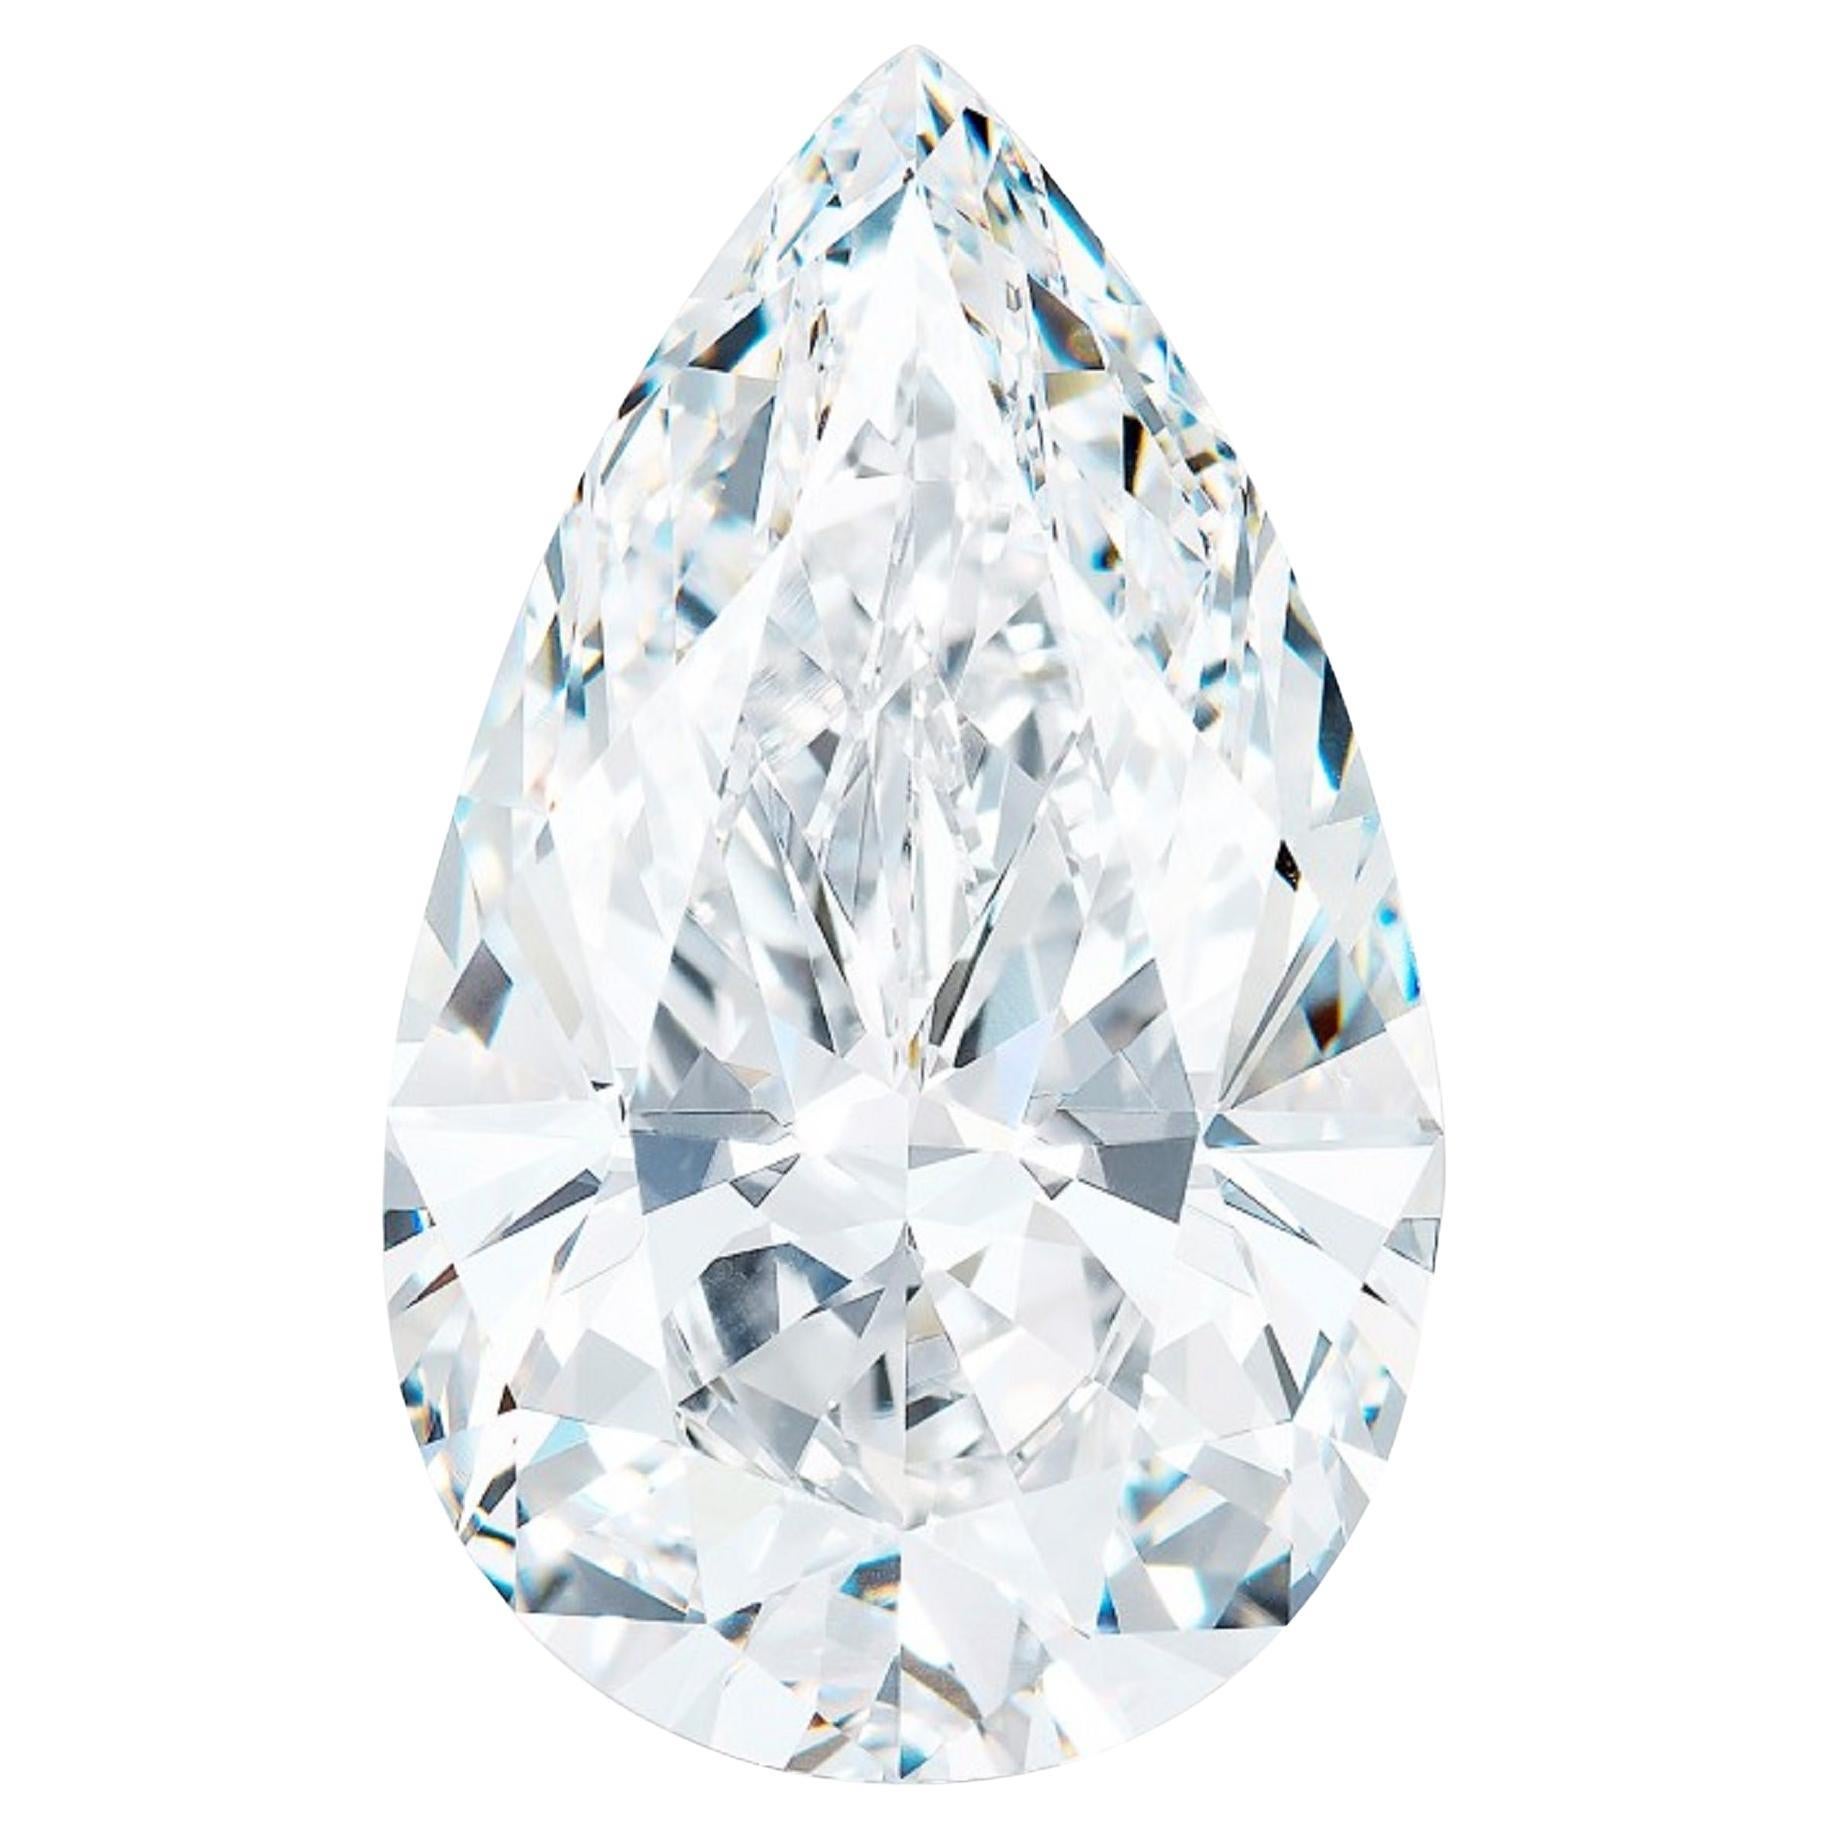 I Flawless GIA Certified 4 Carat Pear Cut Diamond